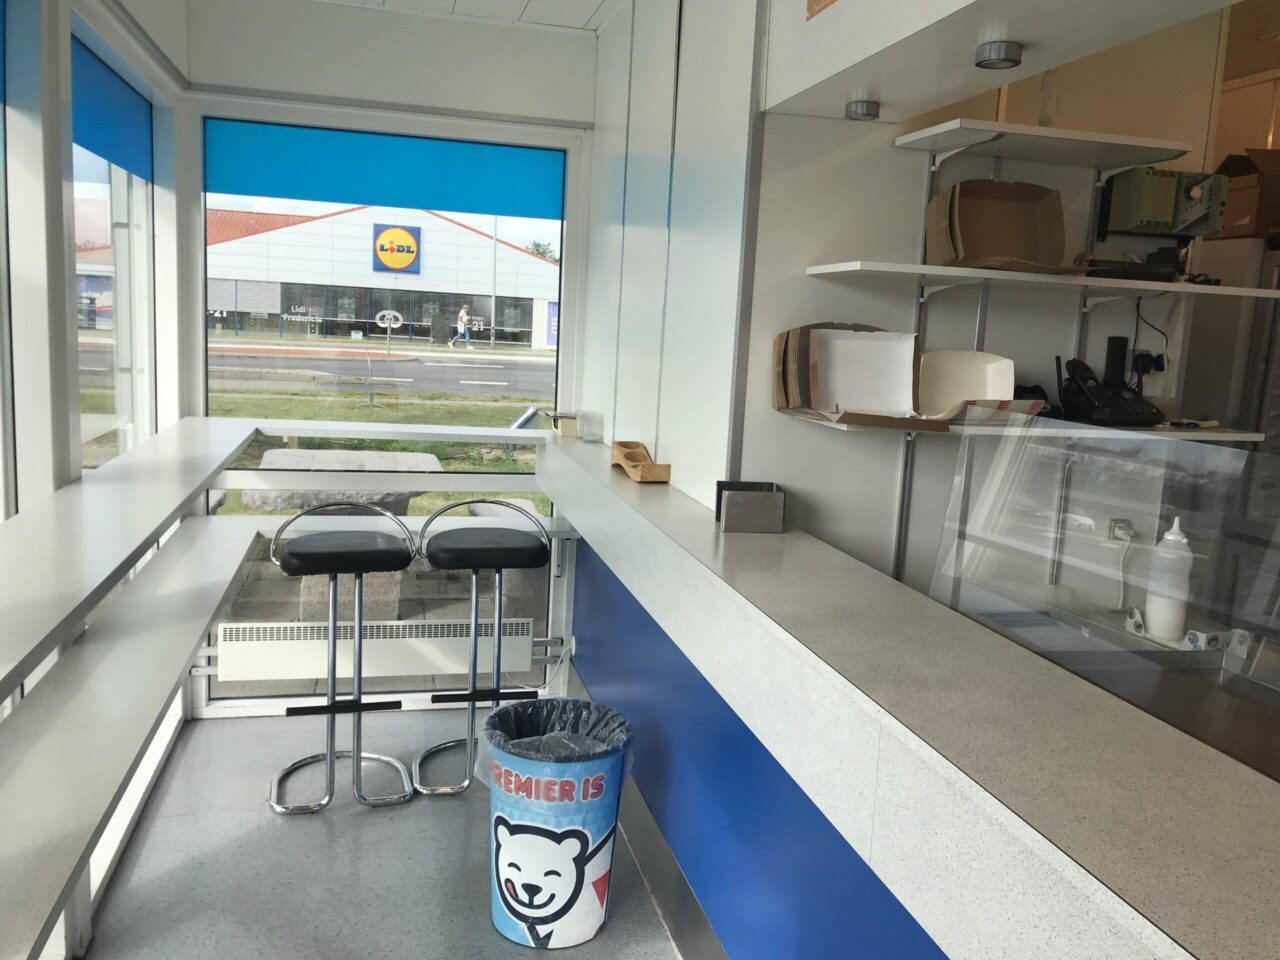 Grillbar til salg i Fredericia - Det er en hvid barbord/disk hvor der under er blå, der er to siddepladser og vinduer